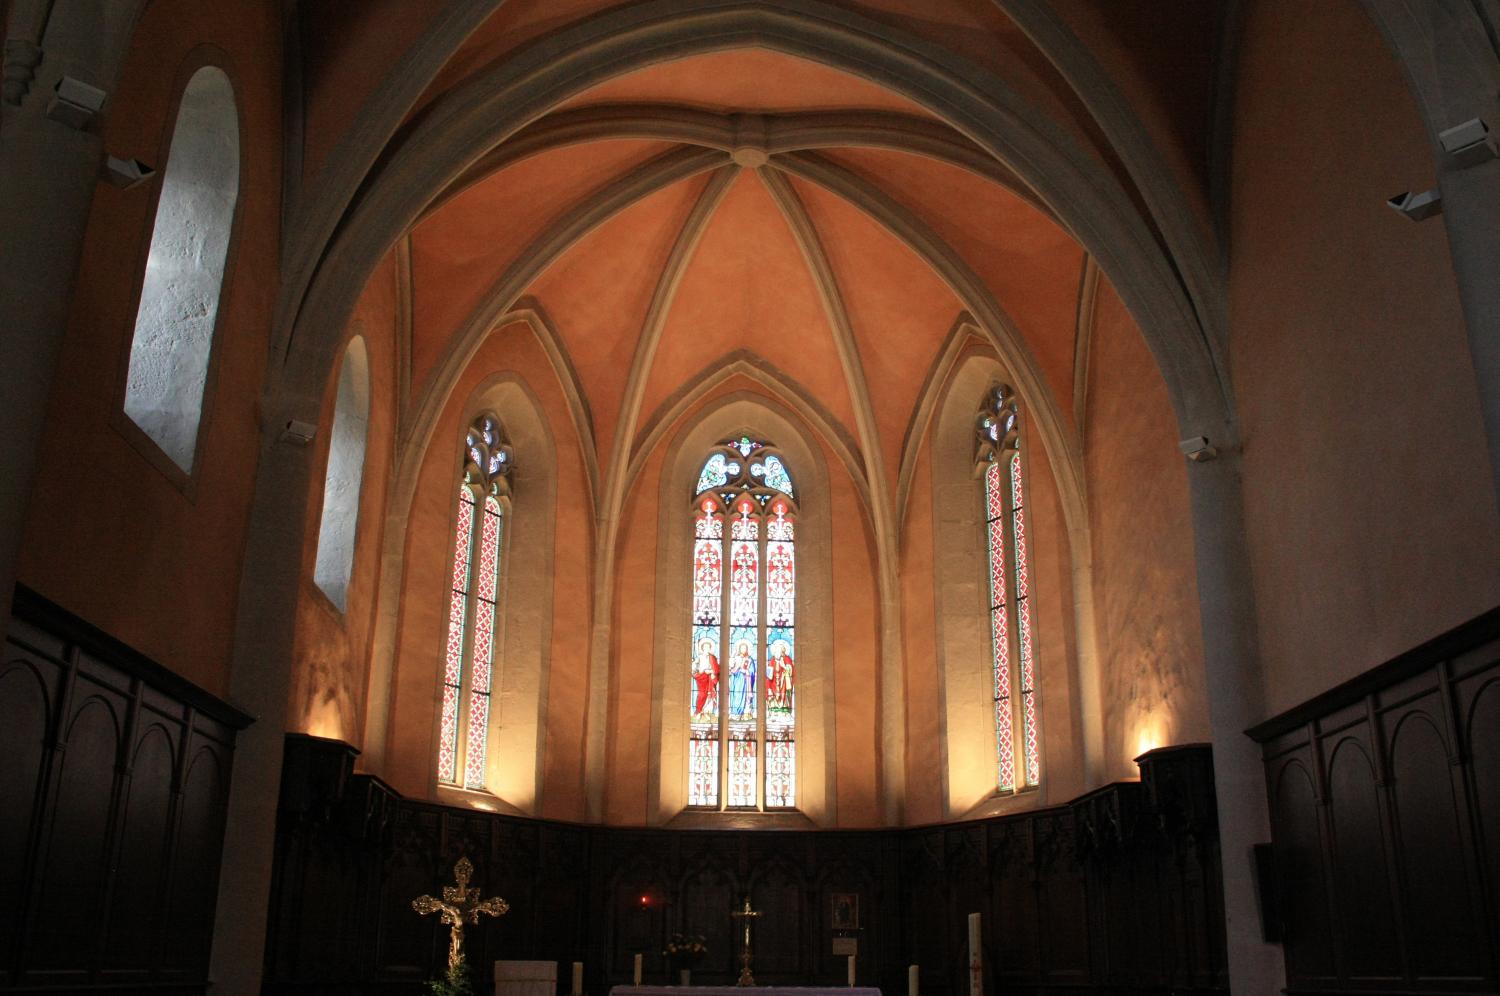 Eglise Saint-Symphorien, Morestel, Isère